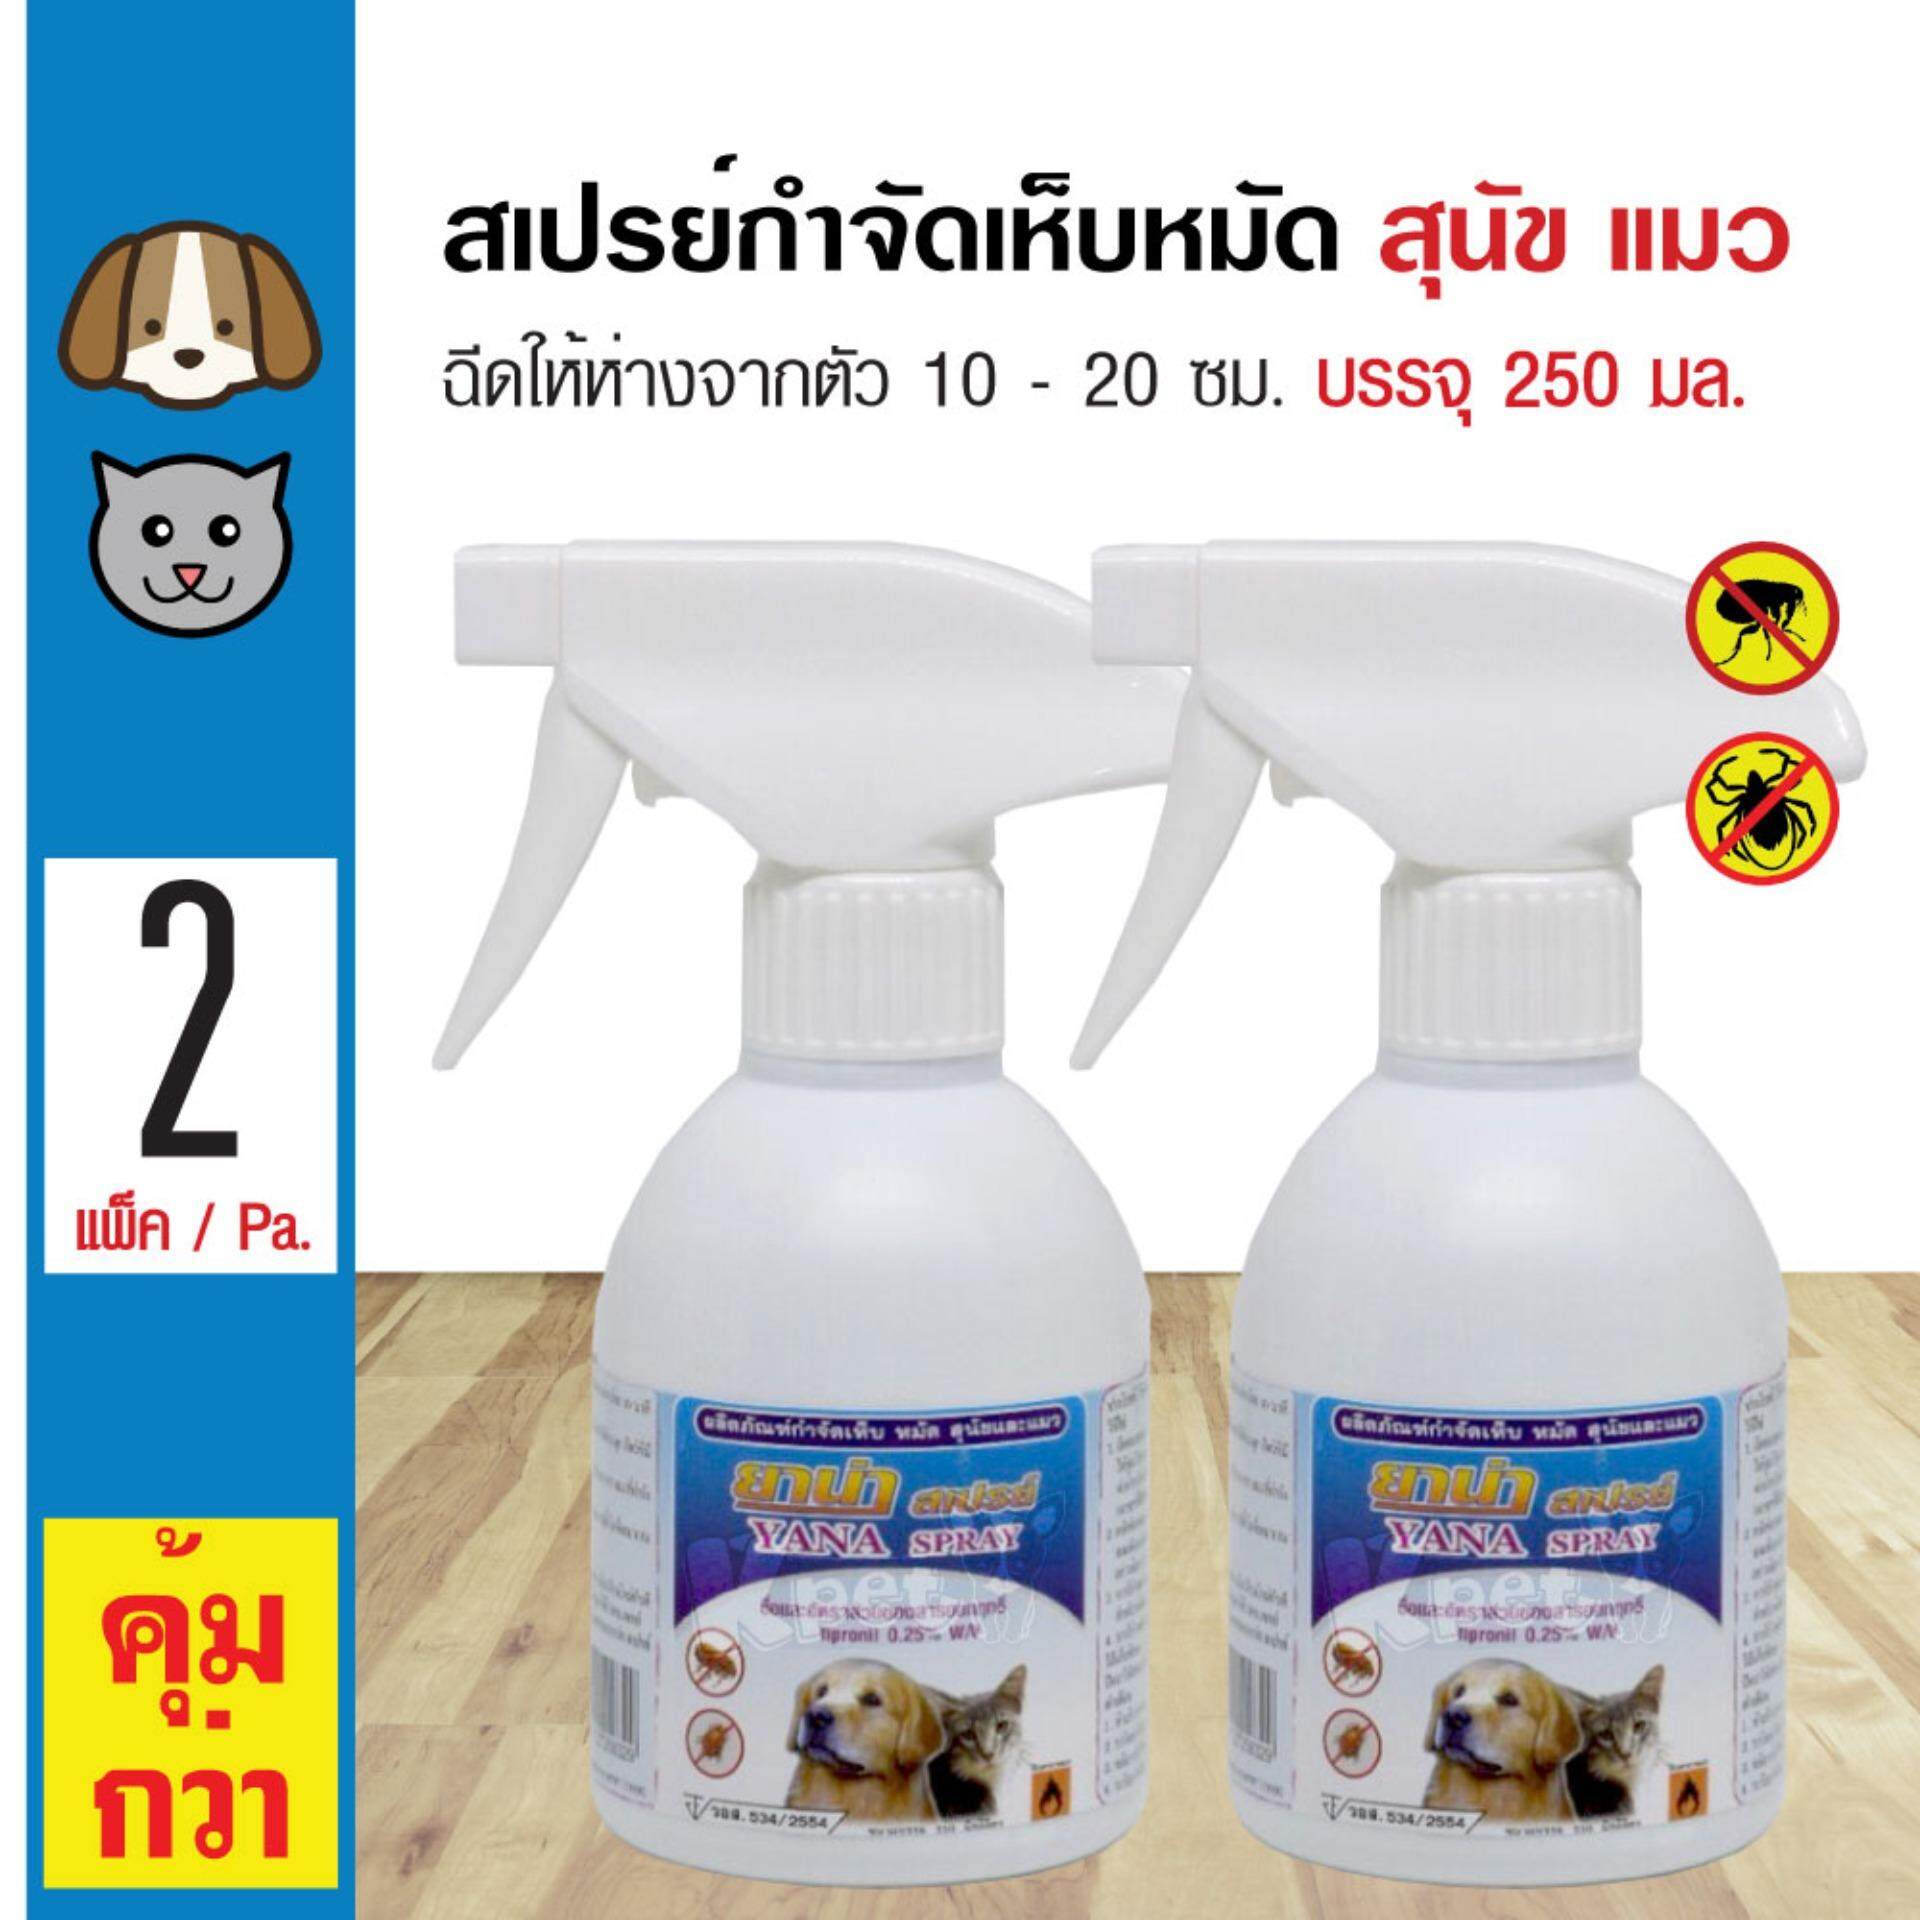 Yana Spray สเปรย์ฉีดกำจัดเห็บหมัด ปลอดภัย สำหรับสุนัข และแมว (250 มล./ขวด) x 2 ขวด